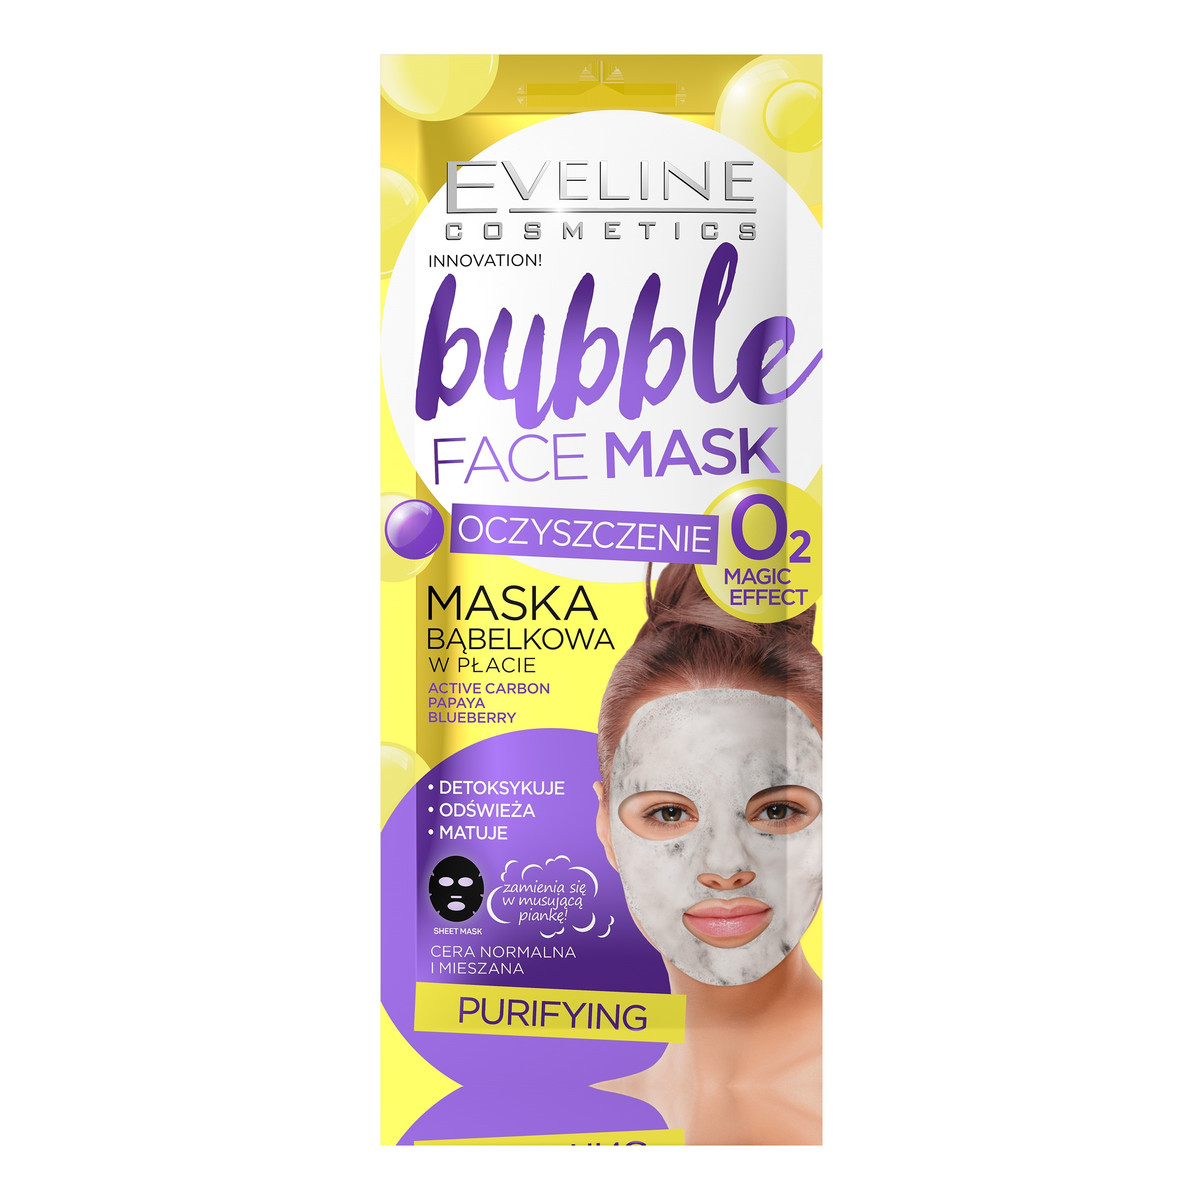 Eveline Bubble Face Maska bąbelkowa w płacie Oczyszczenie